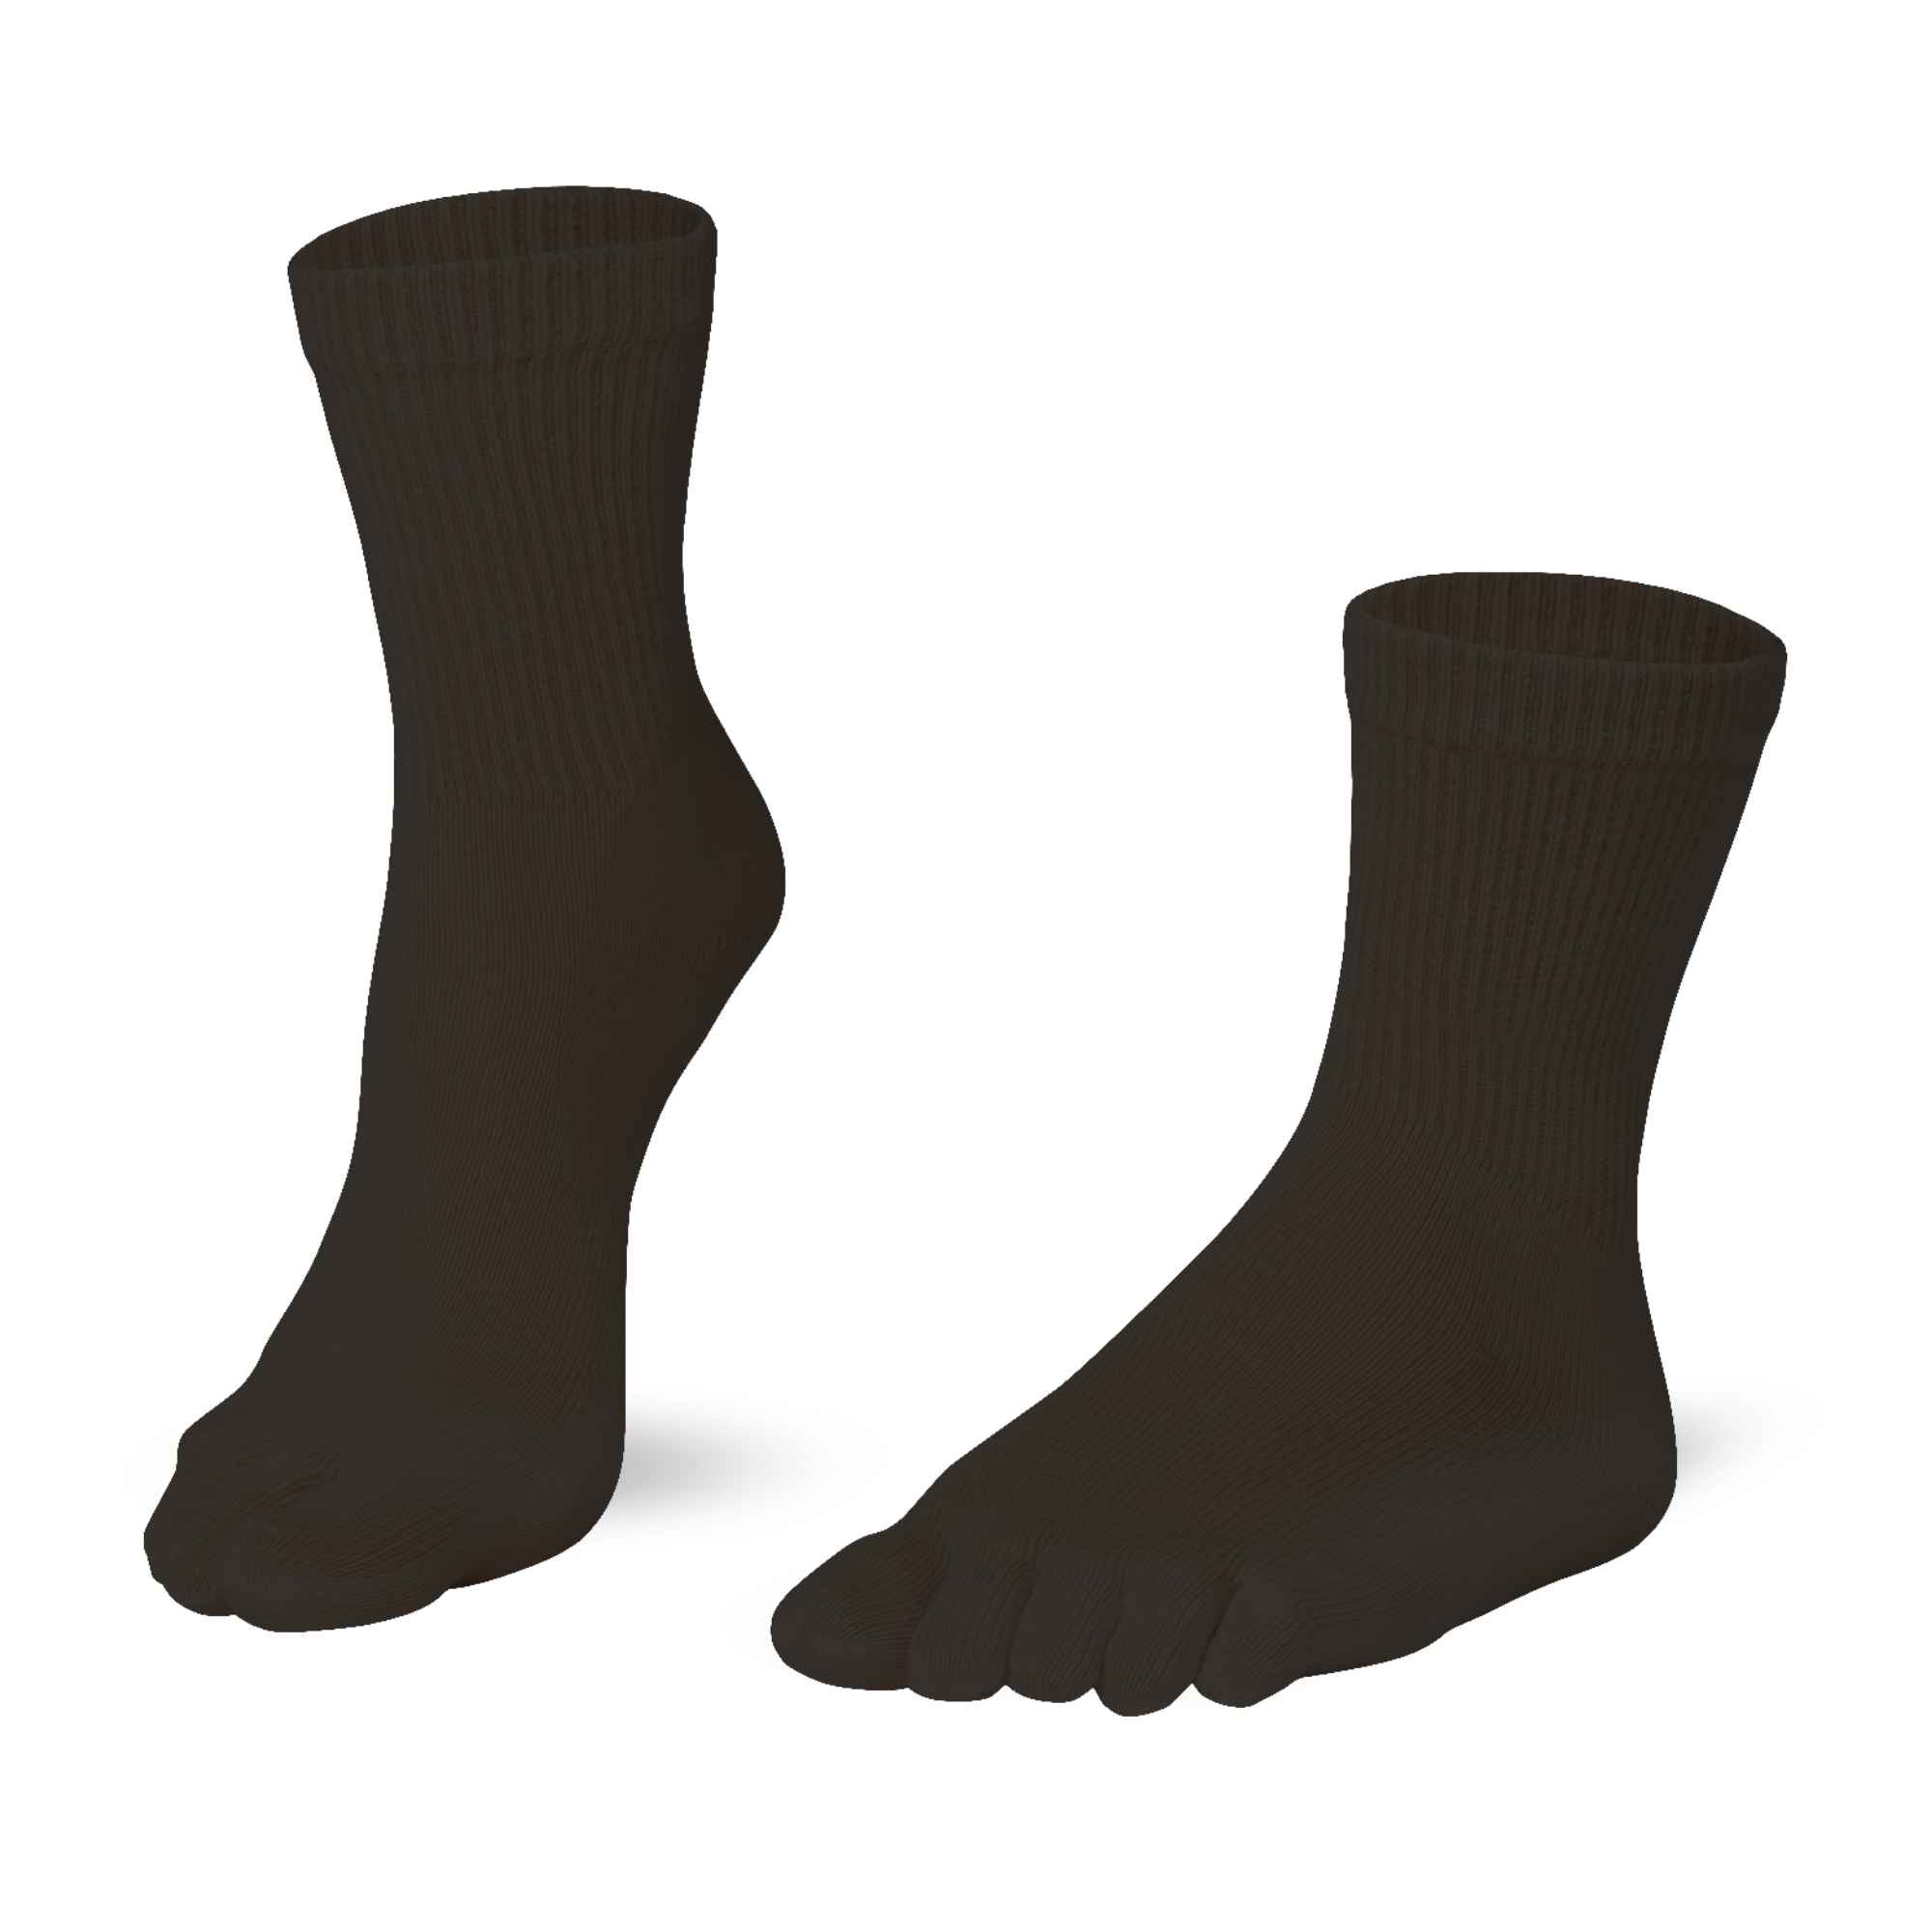 Knitido Essentials Relax calcetines cómodos hasta la pantorrilla, color negro